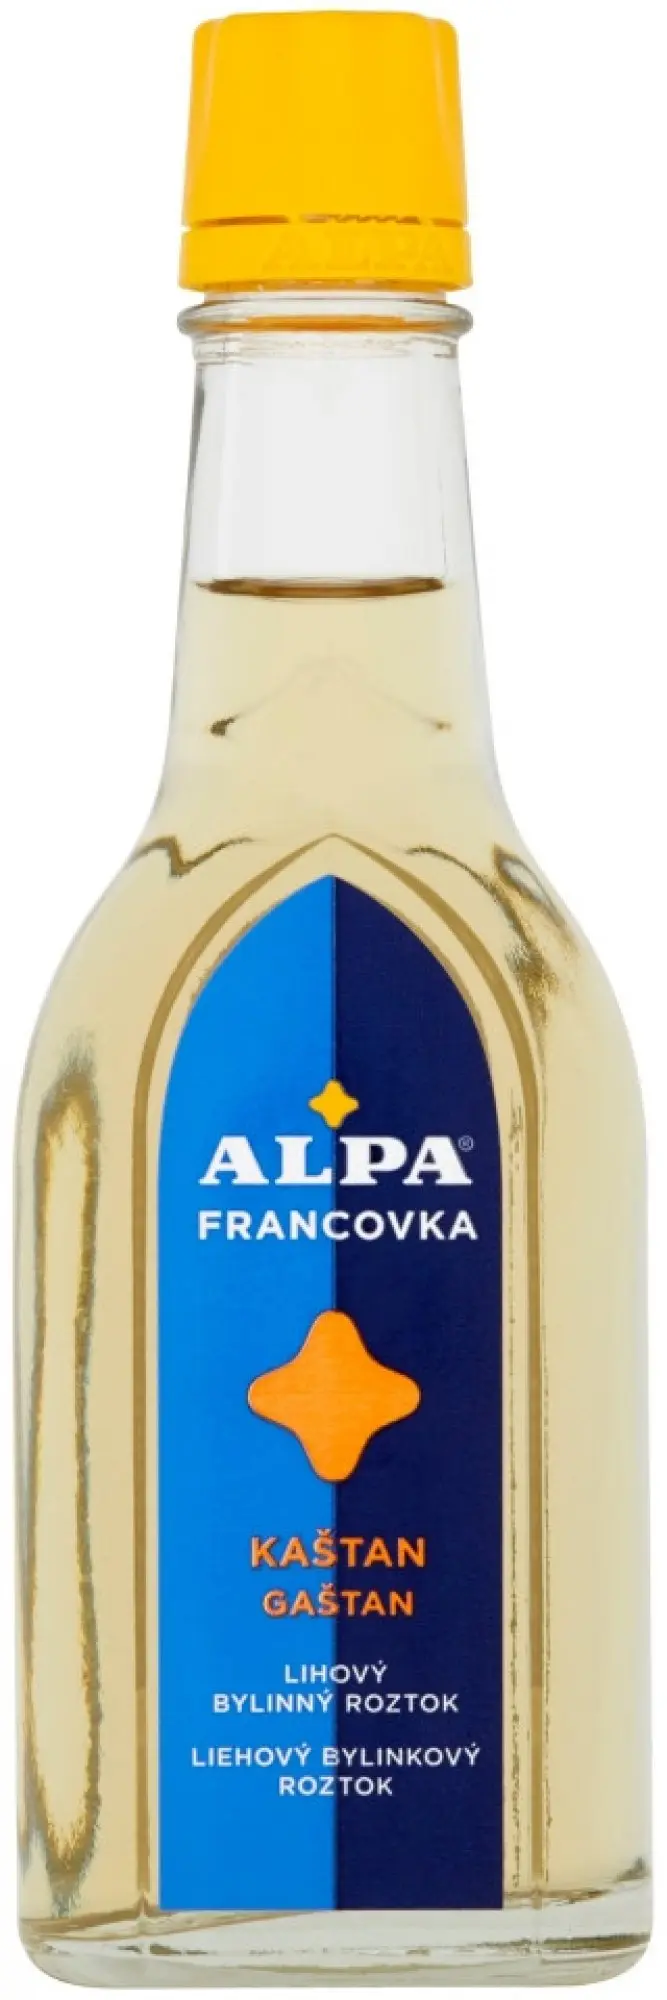 Alpa Francovka bylinný lihový roztok Kaštan 60 ml